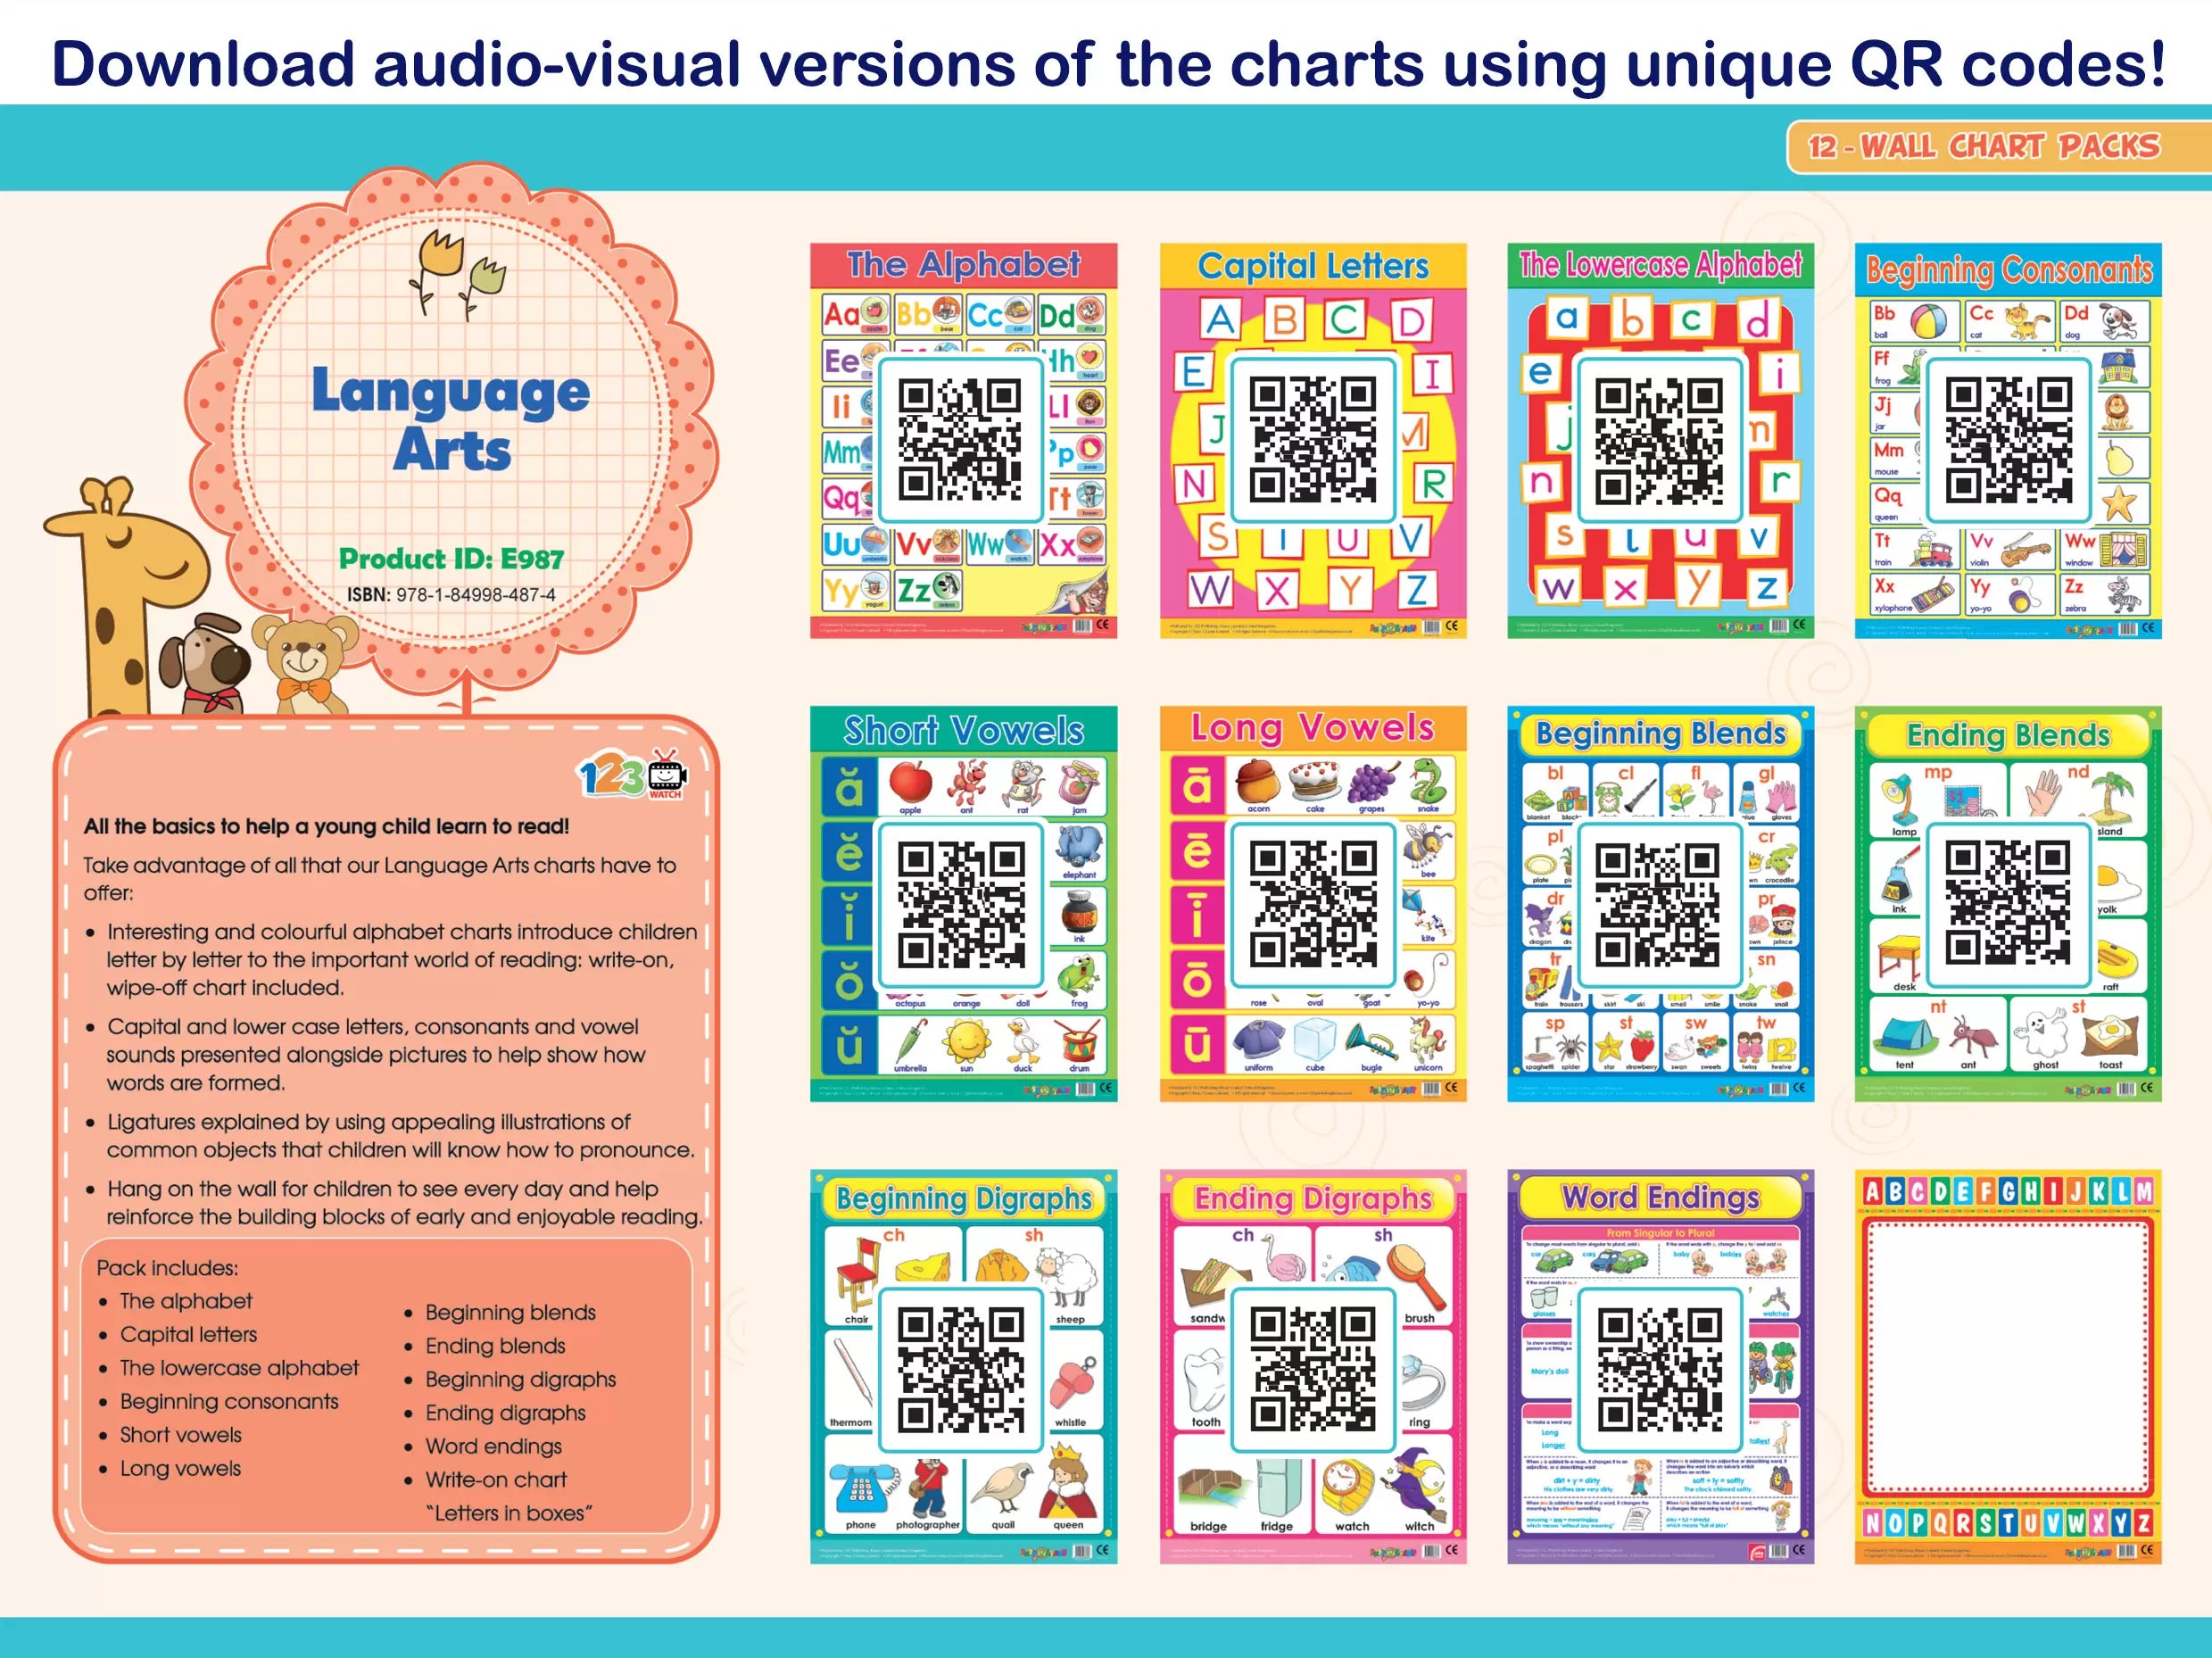 Language Arts (12 Wall Charts) - Educational Wall Chart Pack in English